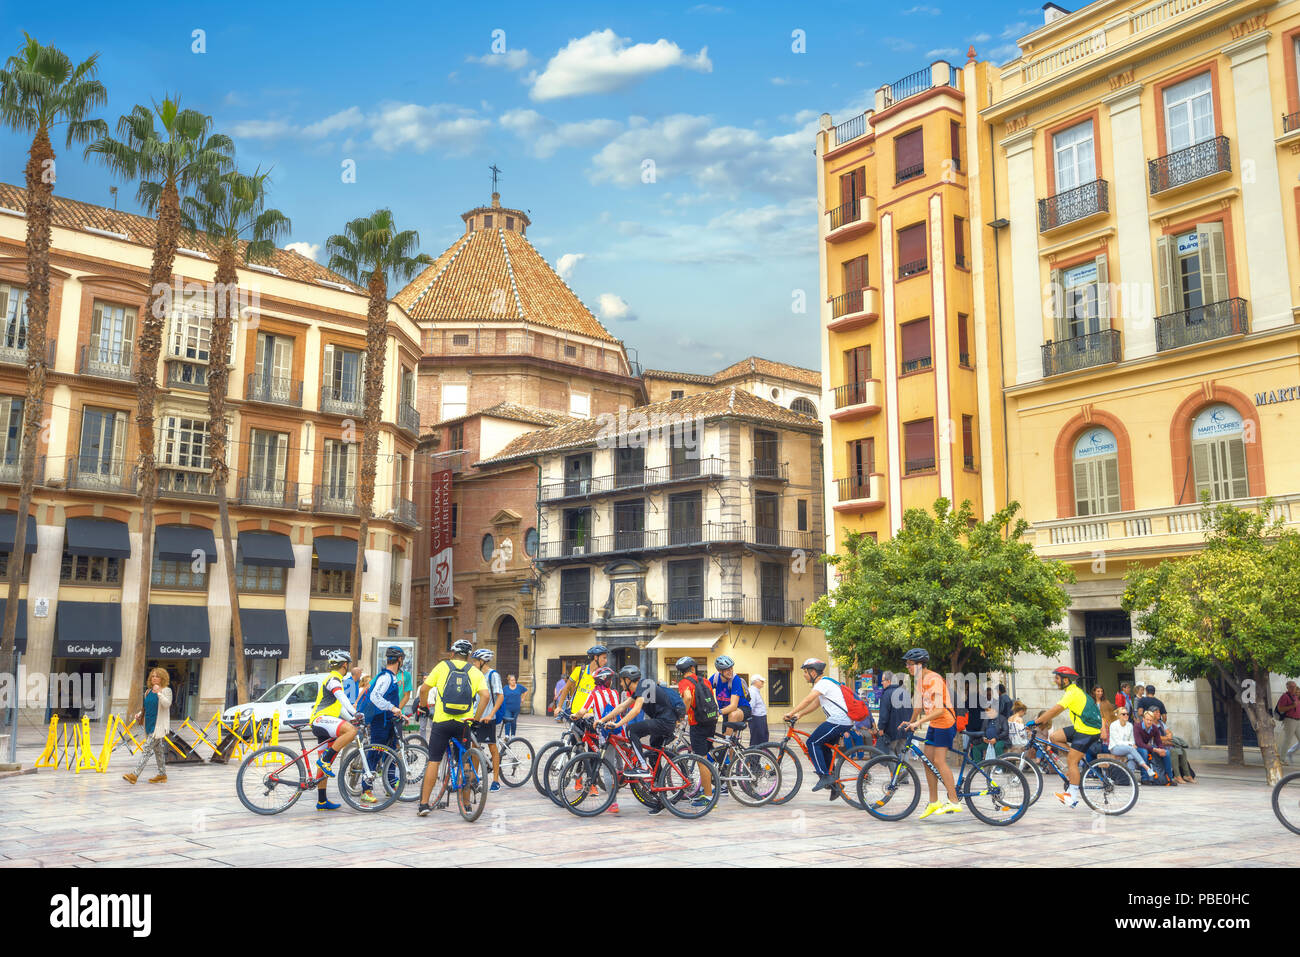 Escena de una calle con un grupo de turistas en bicicleta en el centro de la ciudad. Málaga, Andalucía, España Foto de stock